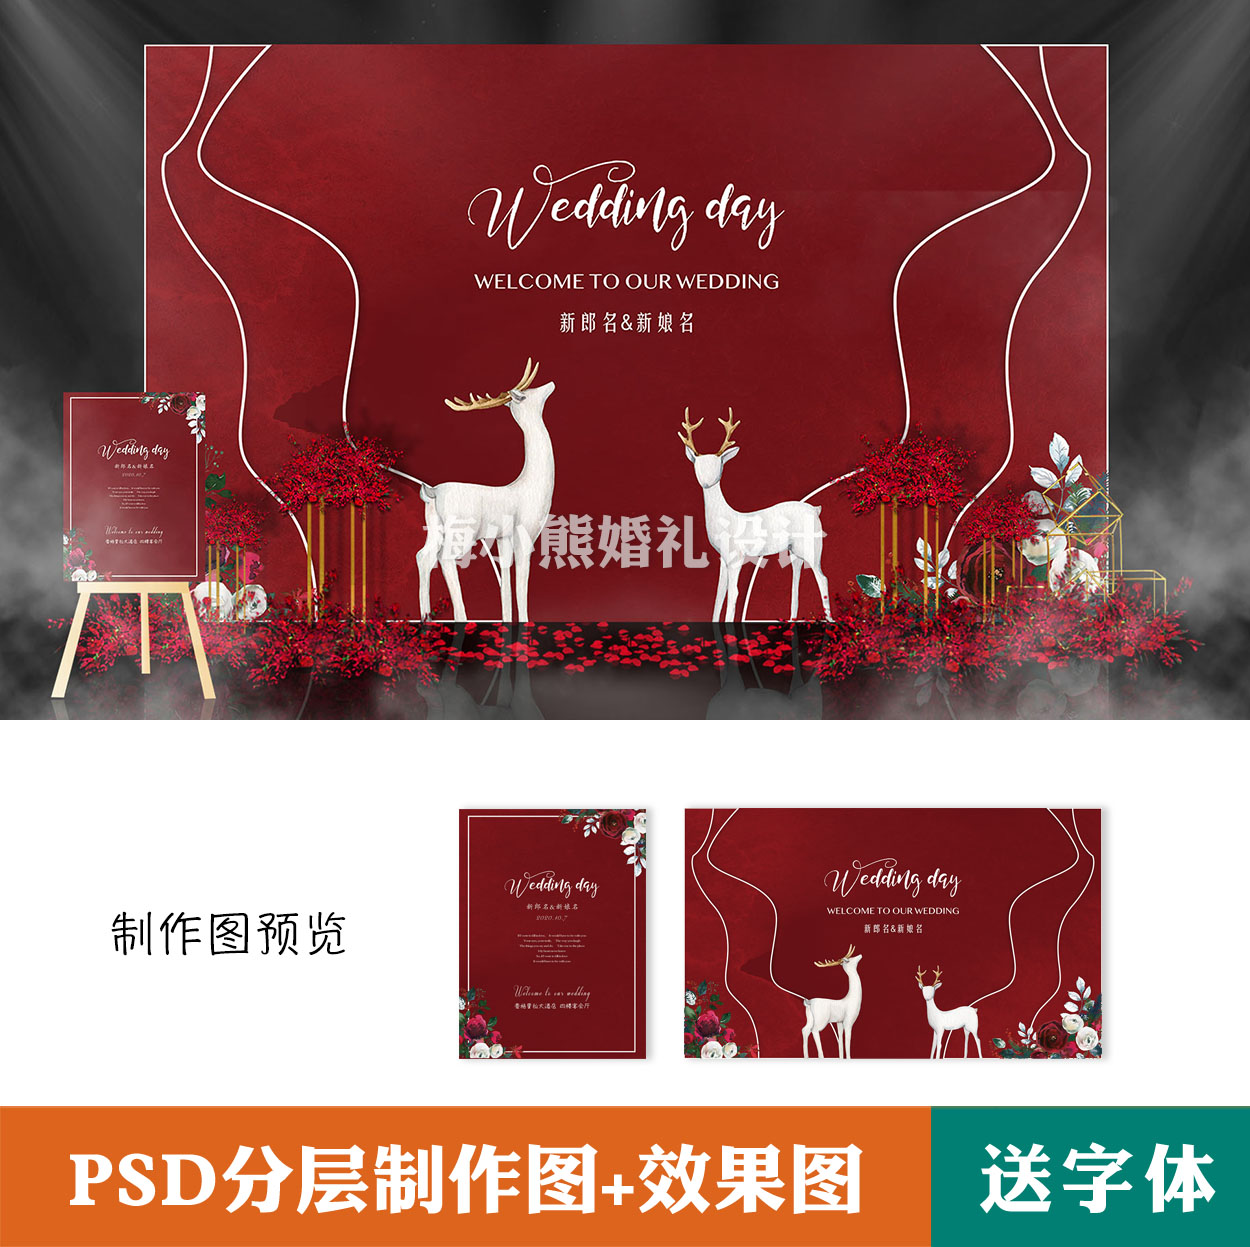 红色婚礼背景墙kt板设计效果图素材订婚宴迎宾留影区签到psd模板